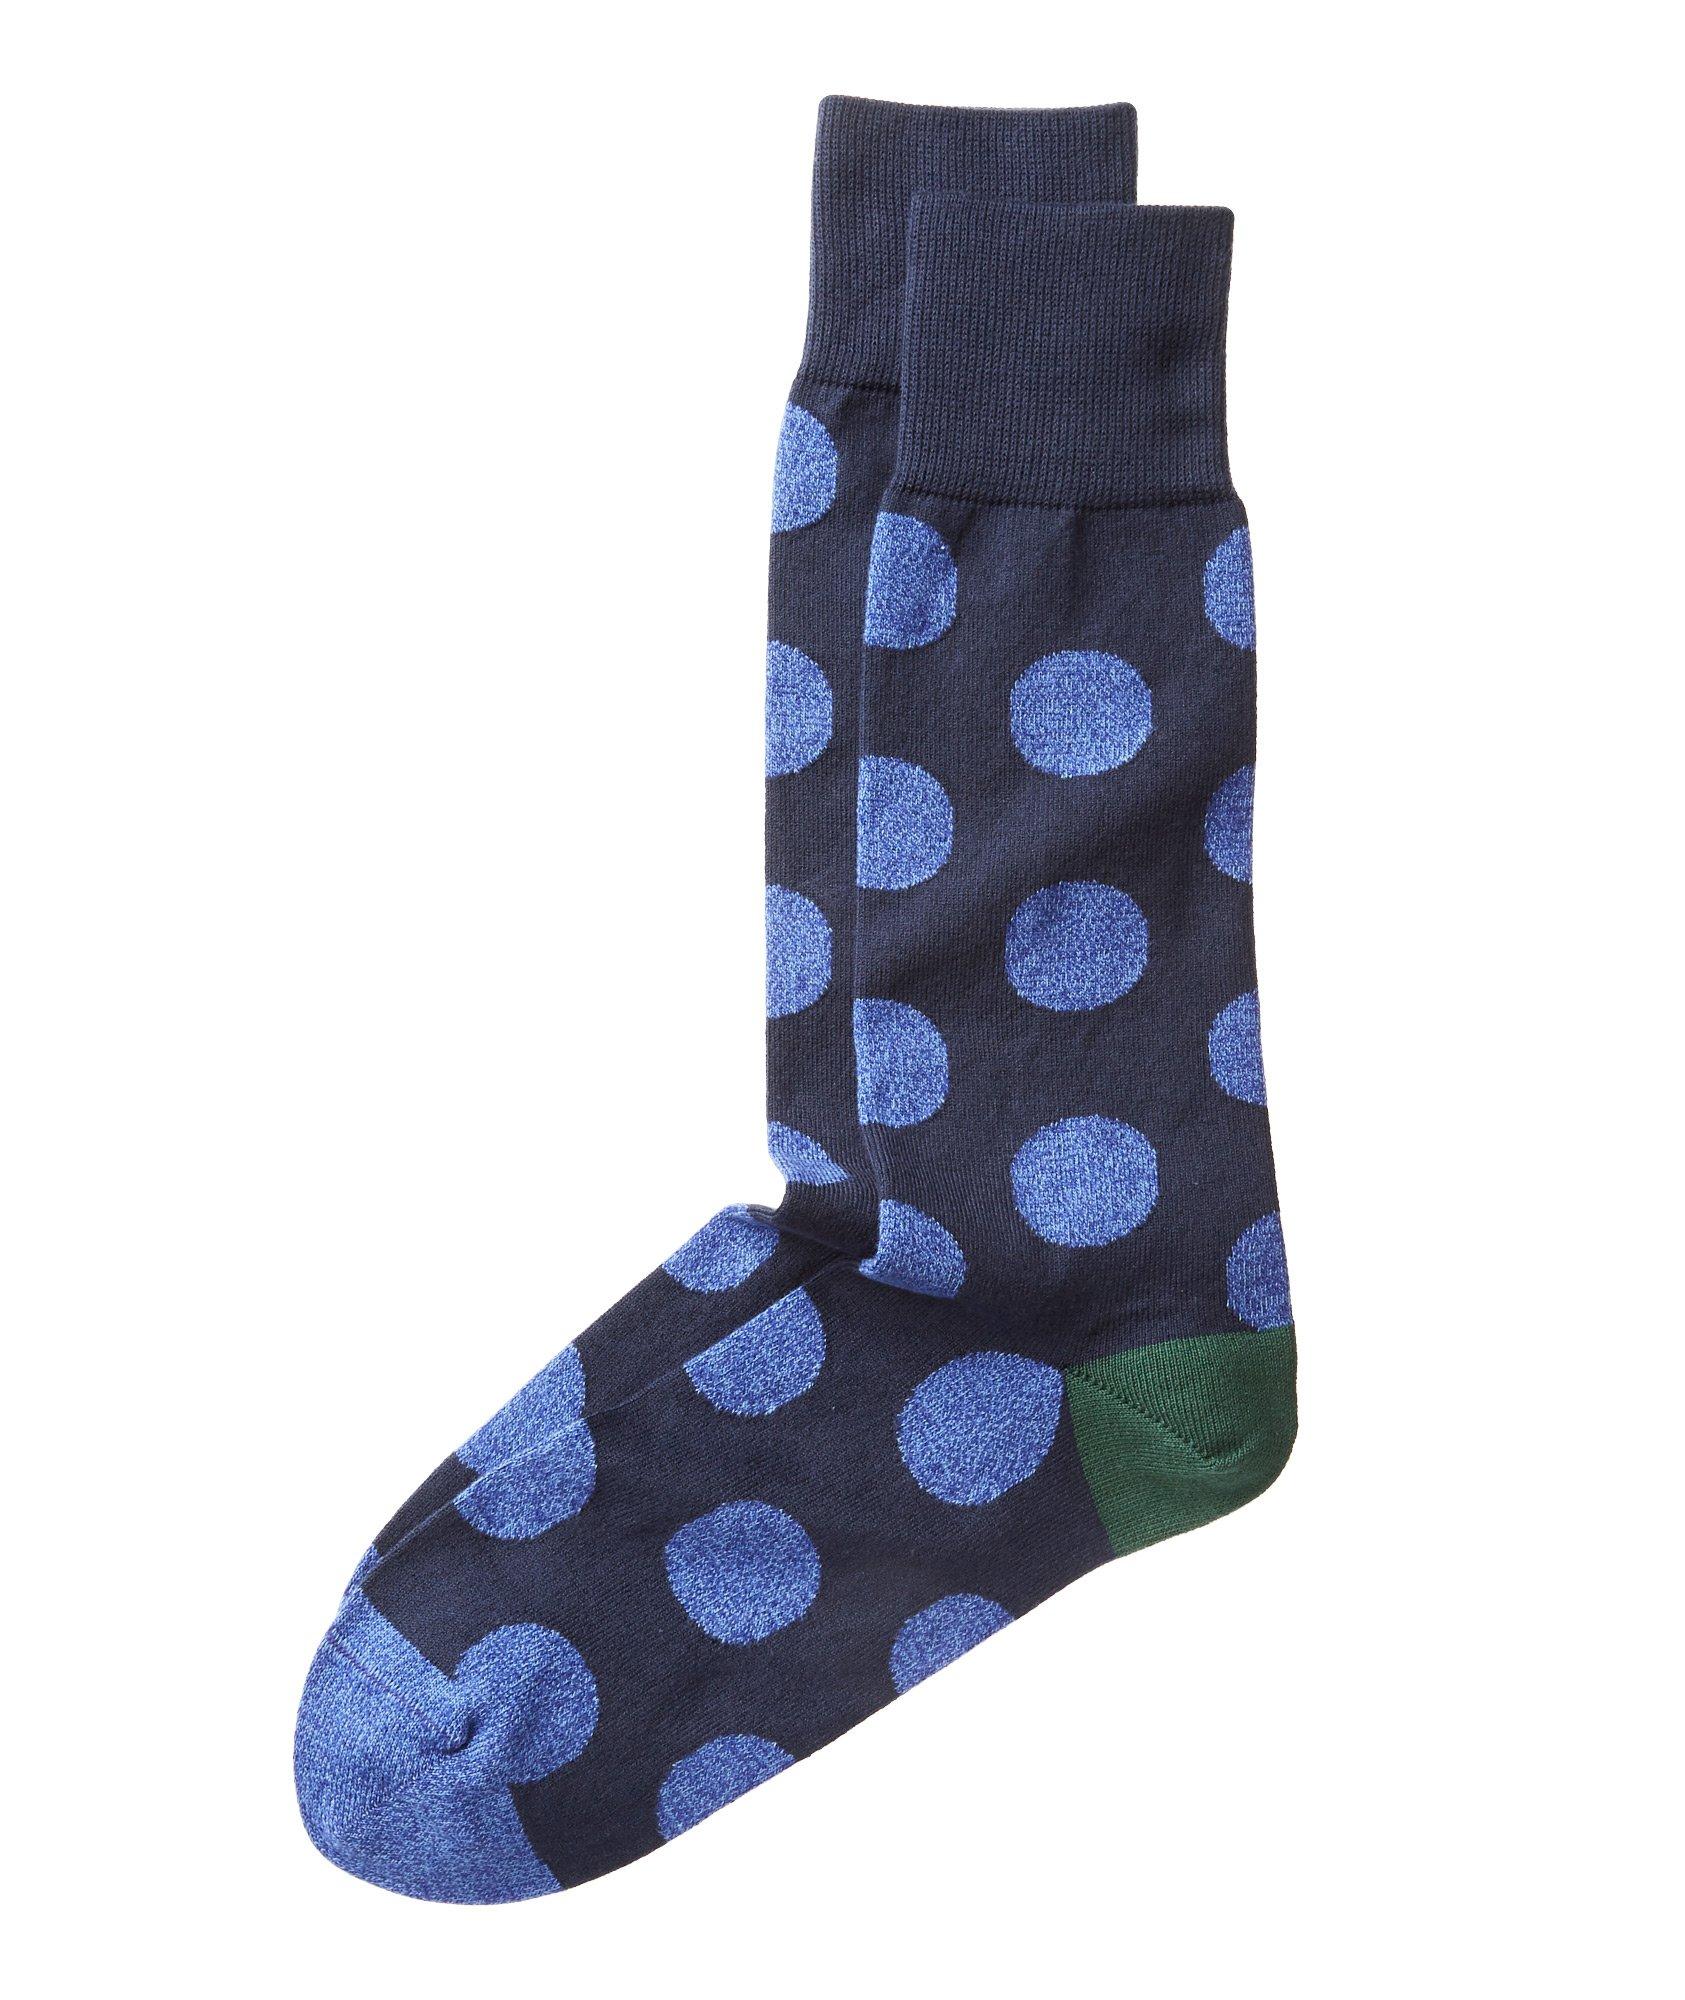 Polka Dot Cotton Socks image 0